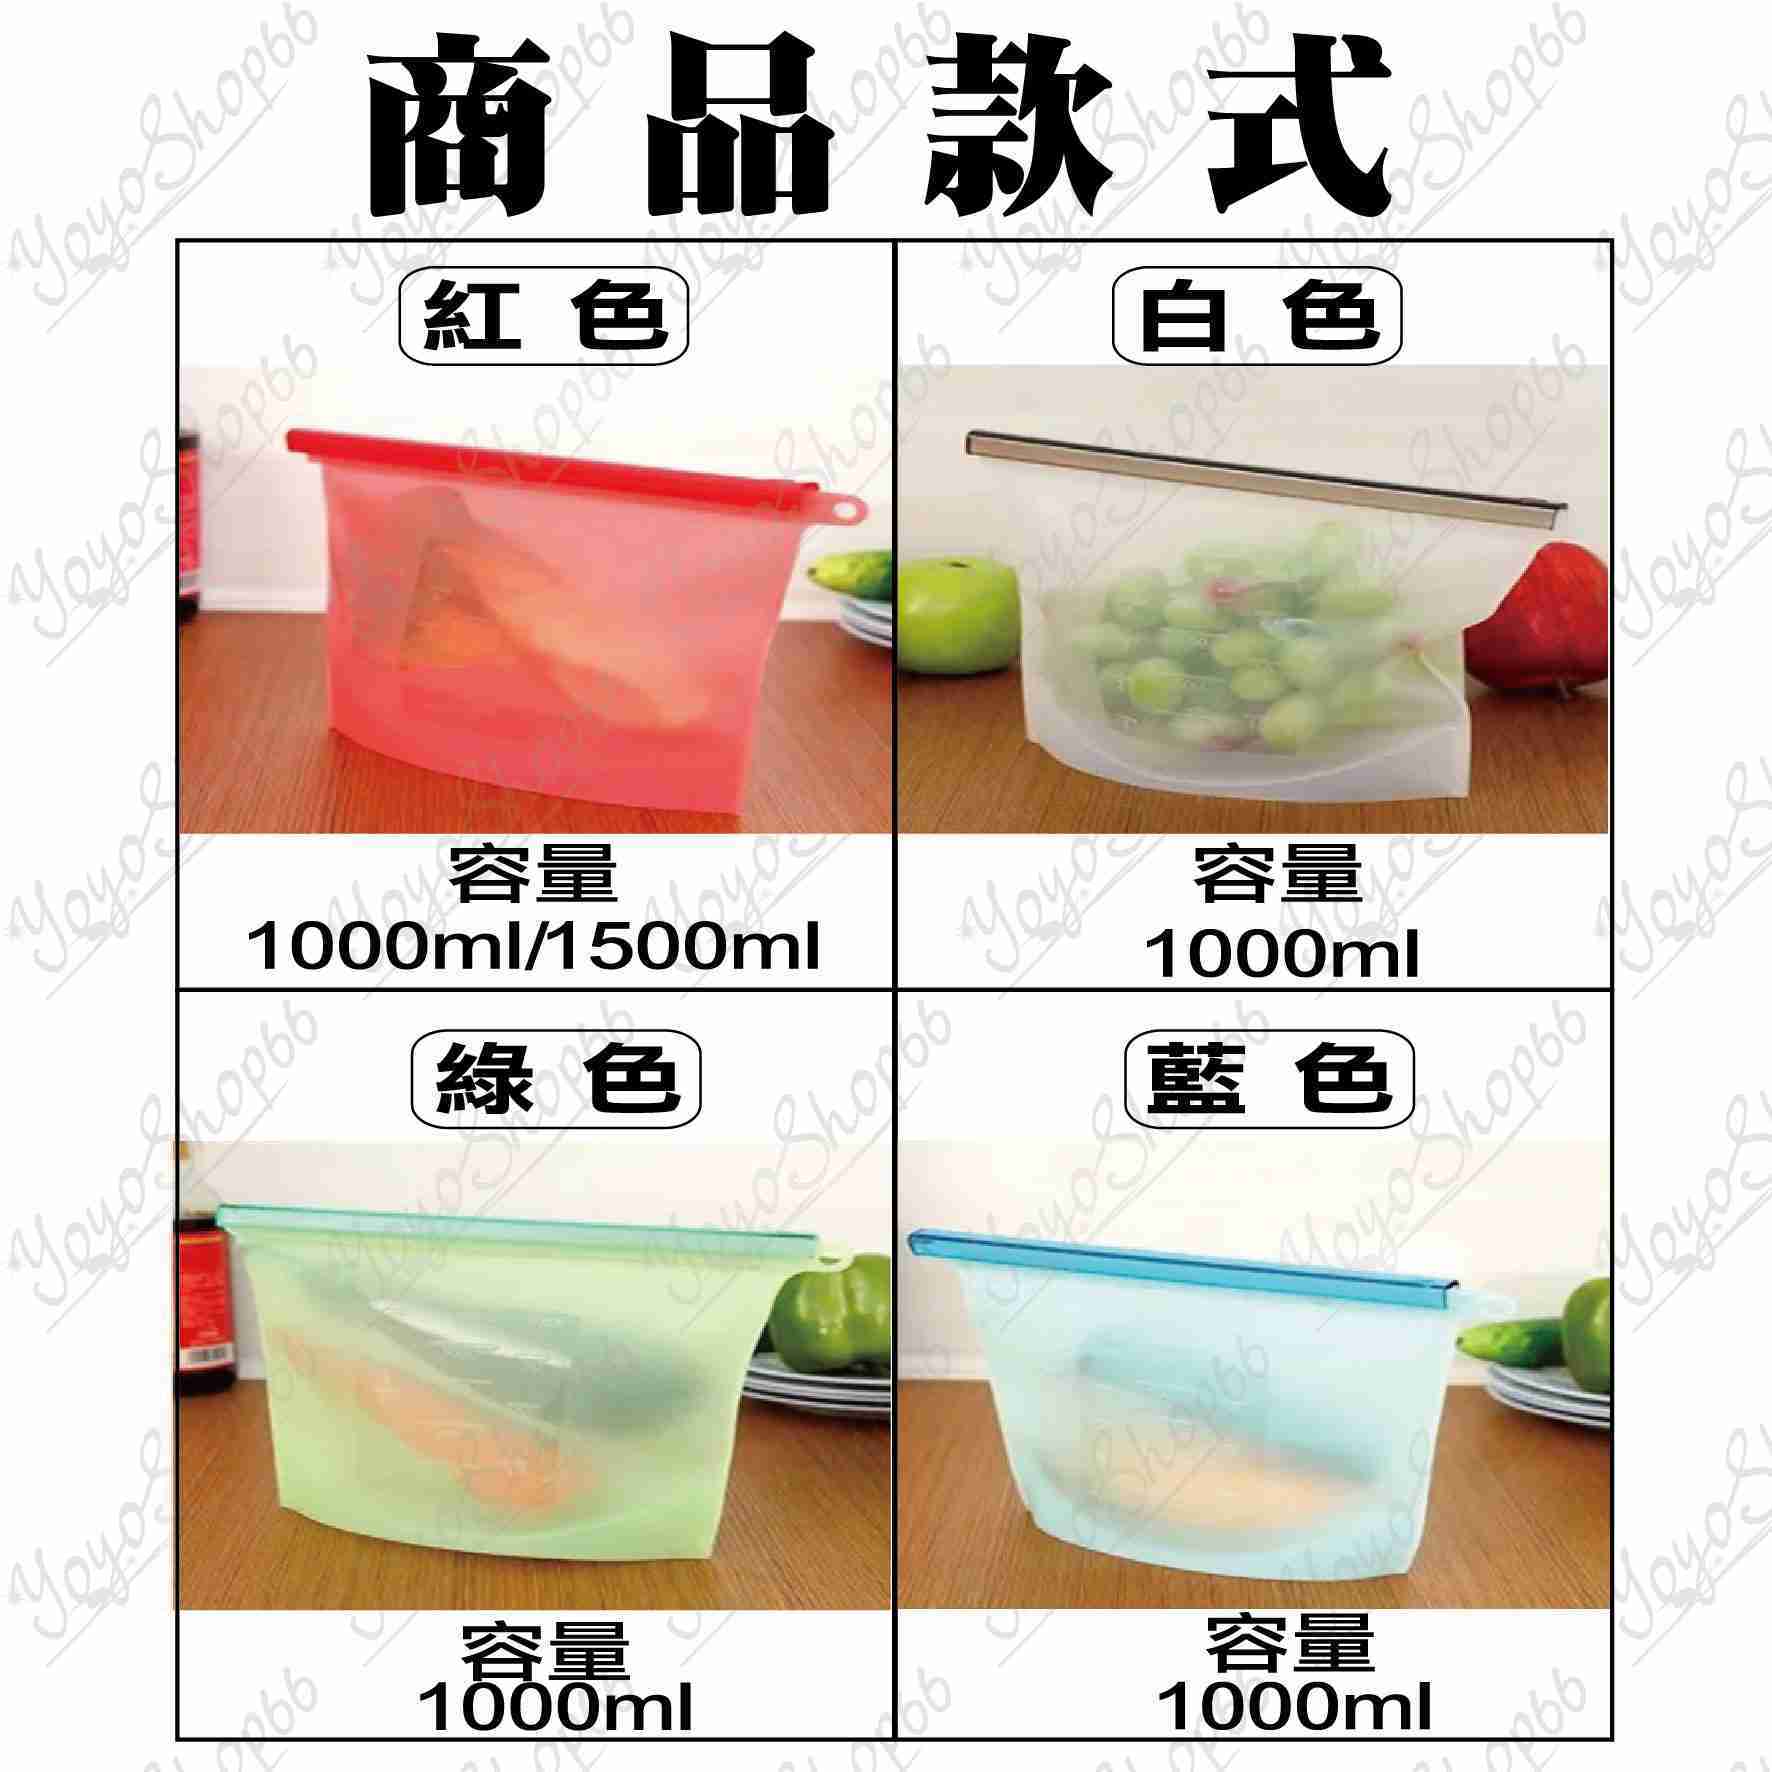 #698【1000ml】矽膠密封保鮮袋 食品級真空保鮮袋 食物袋 可微波加熱 飲品 蔬菜 水果 分類袋【愛尚生活】